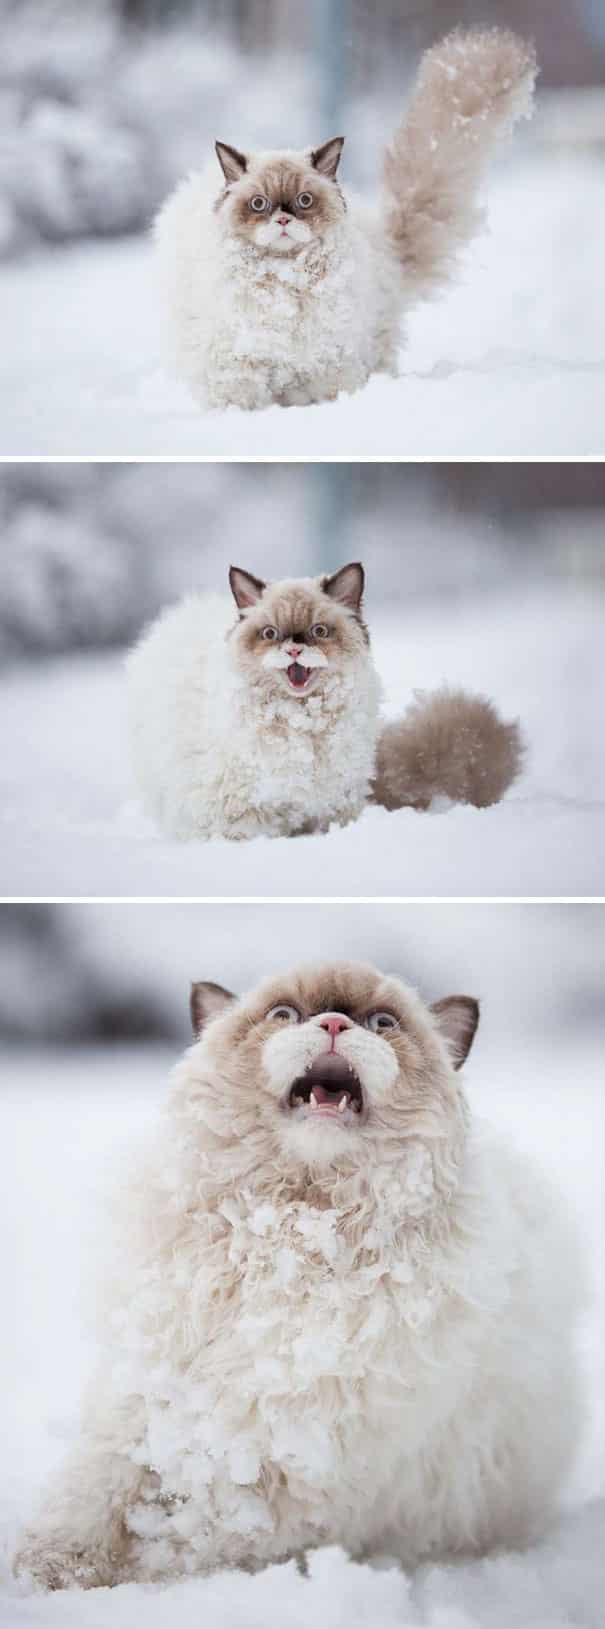 Снег!Кот увидел снег!